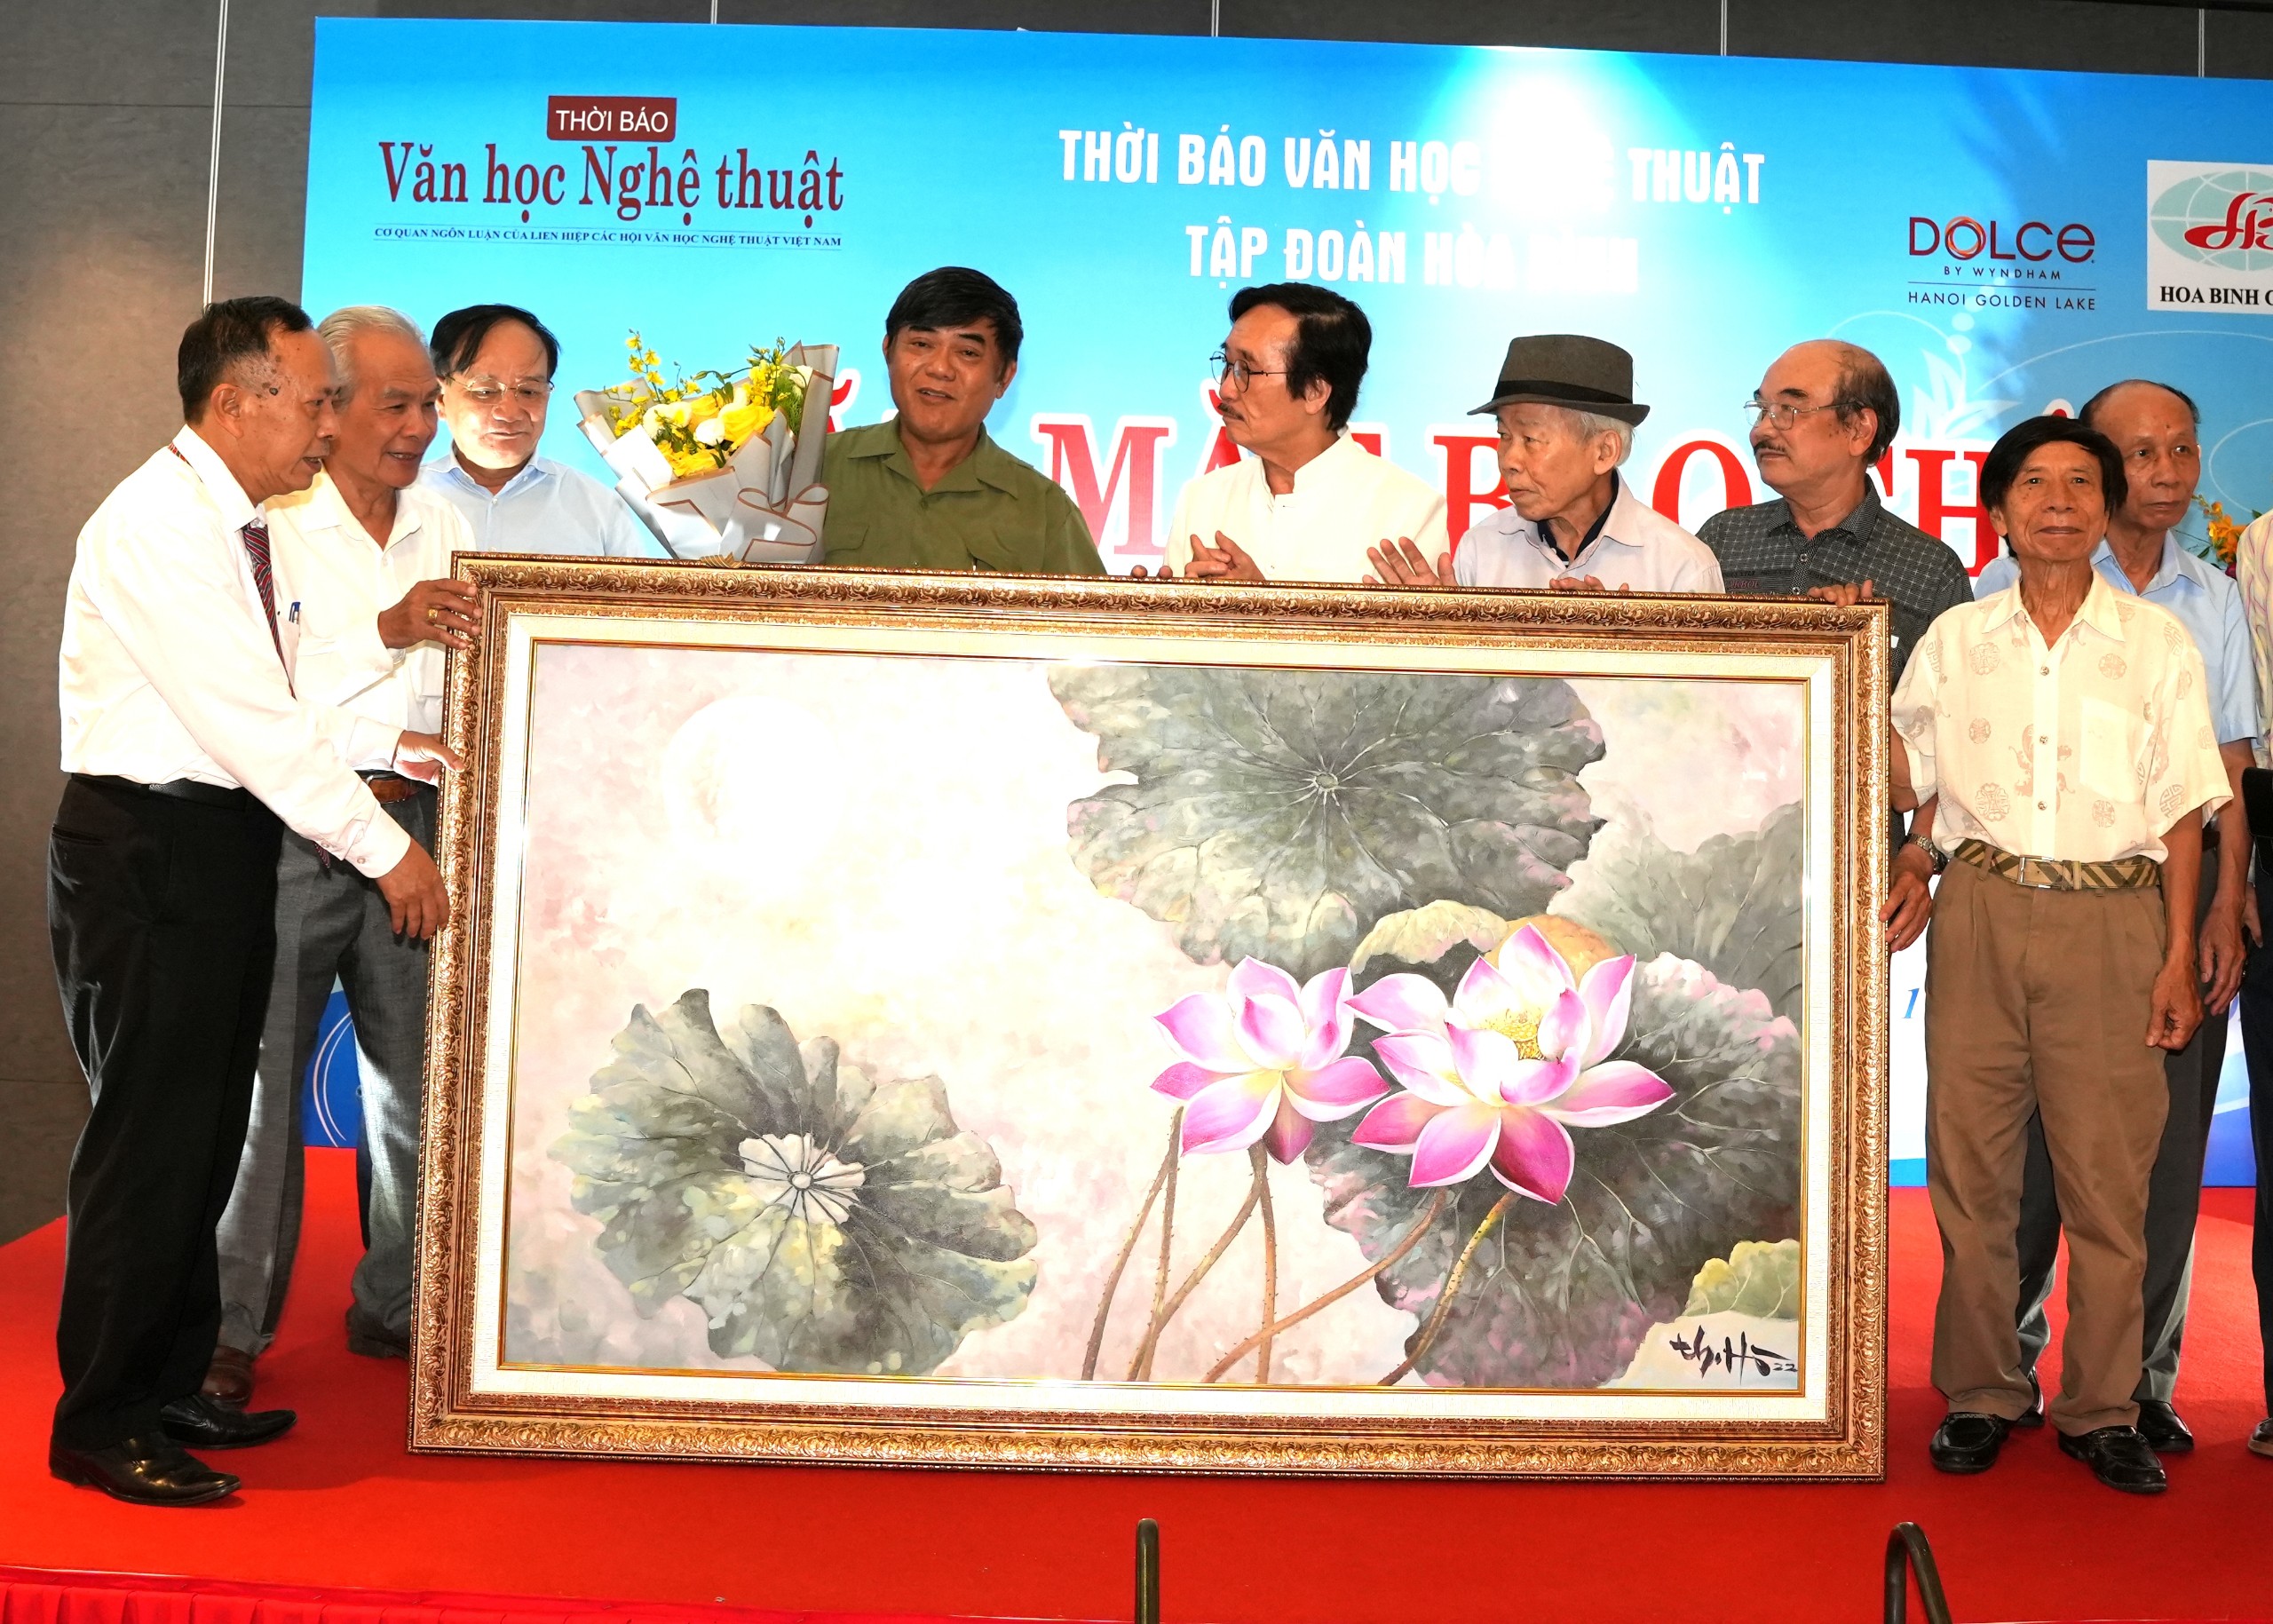 Thời báo Văn học nghệ thuật tổ chức Gặp mặt báo chí chào mừng ngày Báo chí Cách mạng Việt Nam - 2